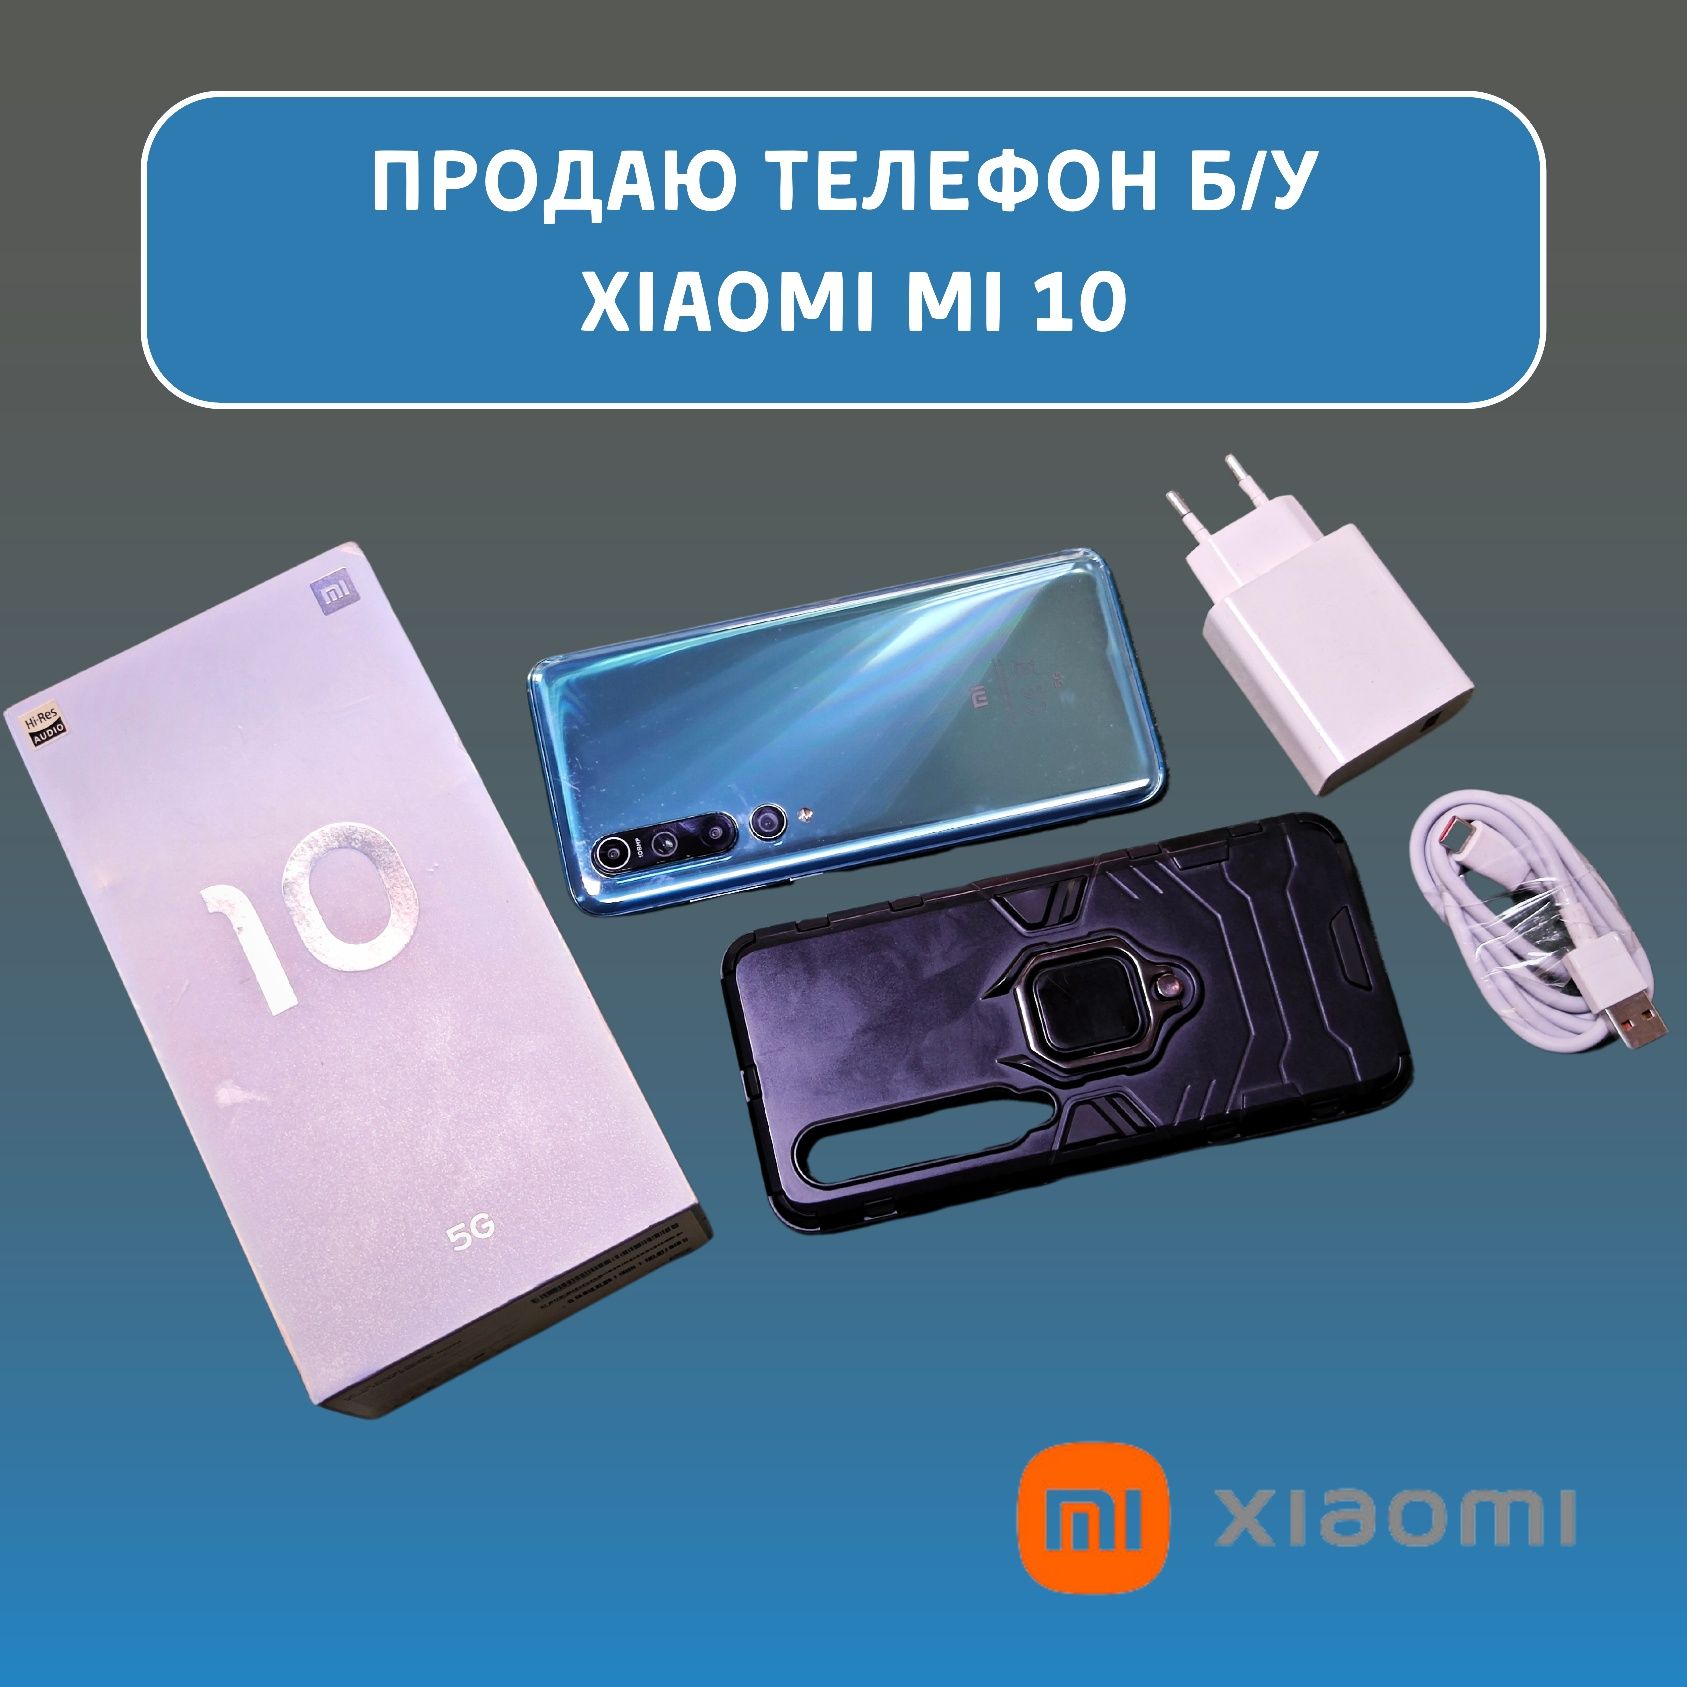 Продаётся смартфон Xiaomi mi 10 б/у